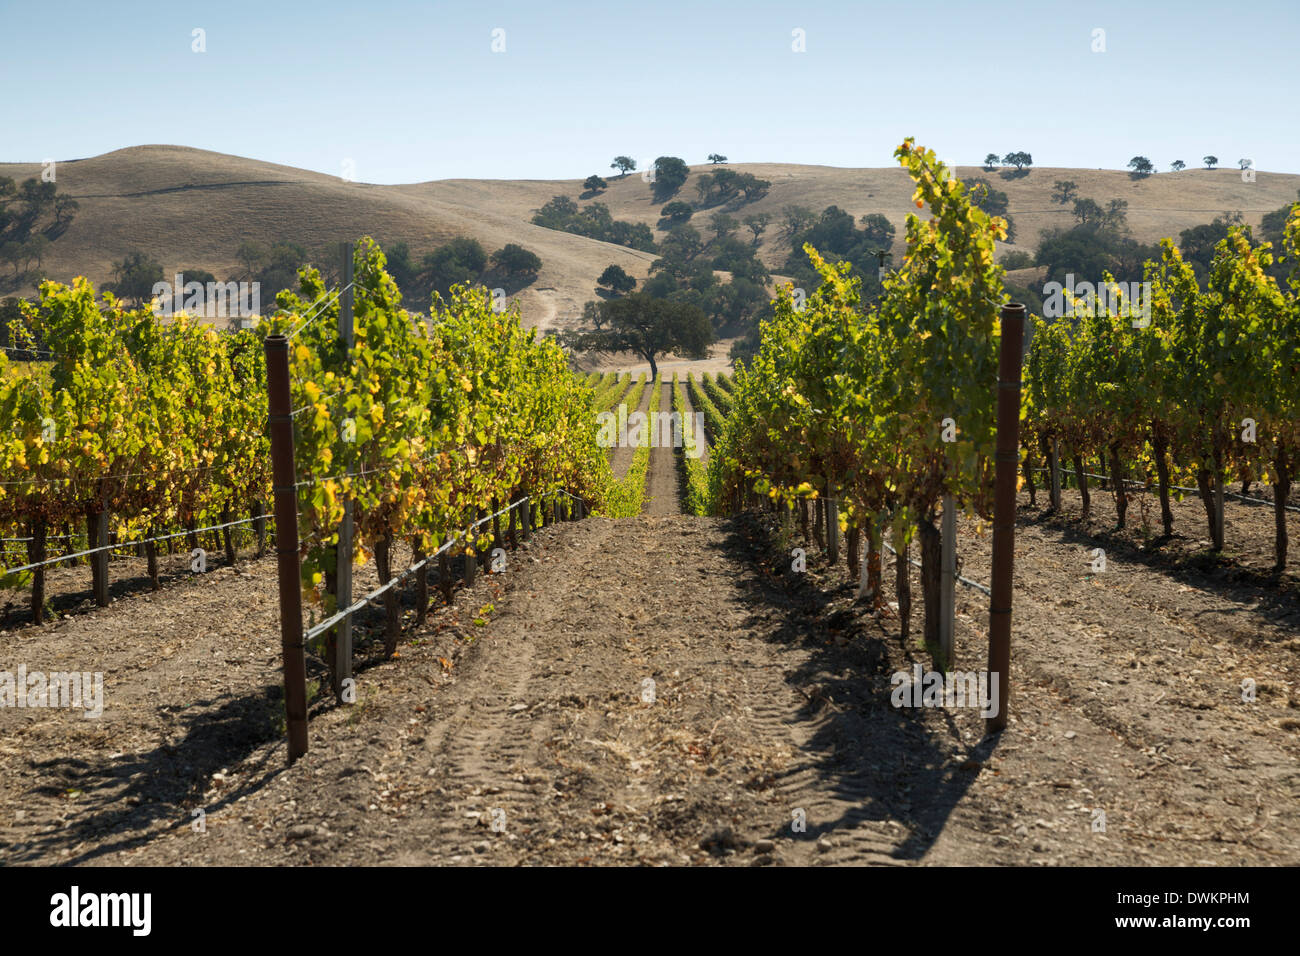 Vignes et collines, près de Los Olivos, Santa Ynez Valley, comté de Santa Barbara, Californie, États-Unis d'Amérique Banque D'Images